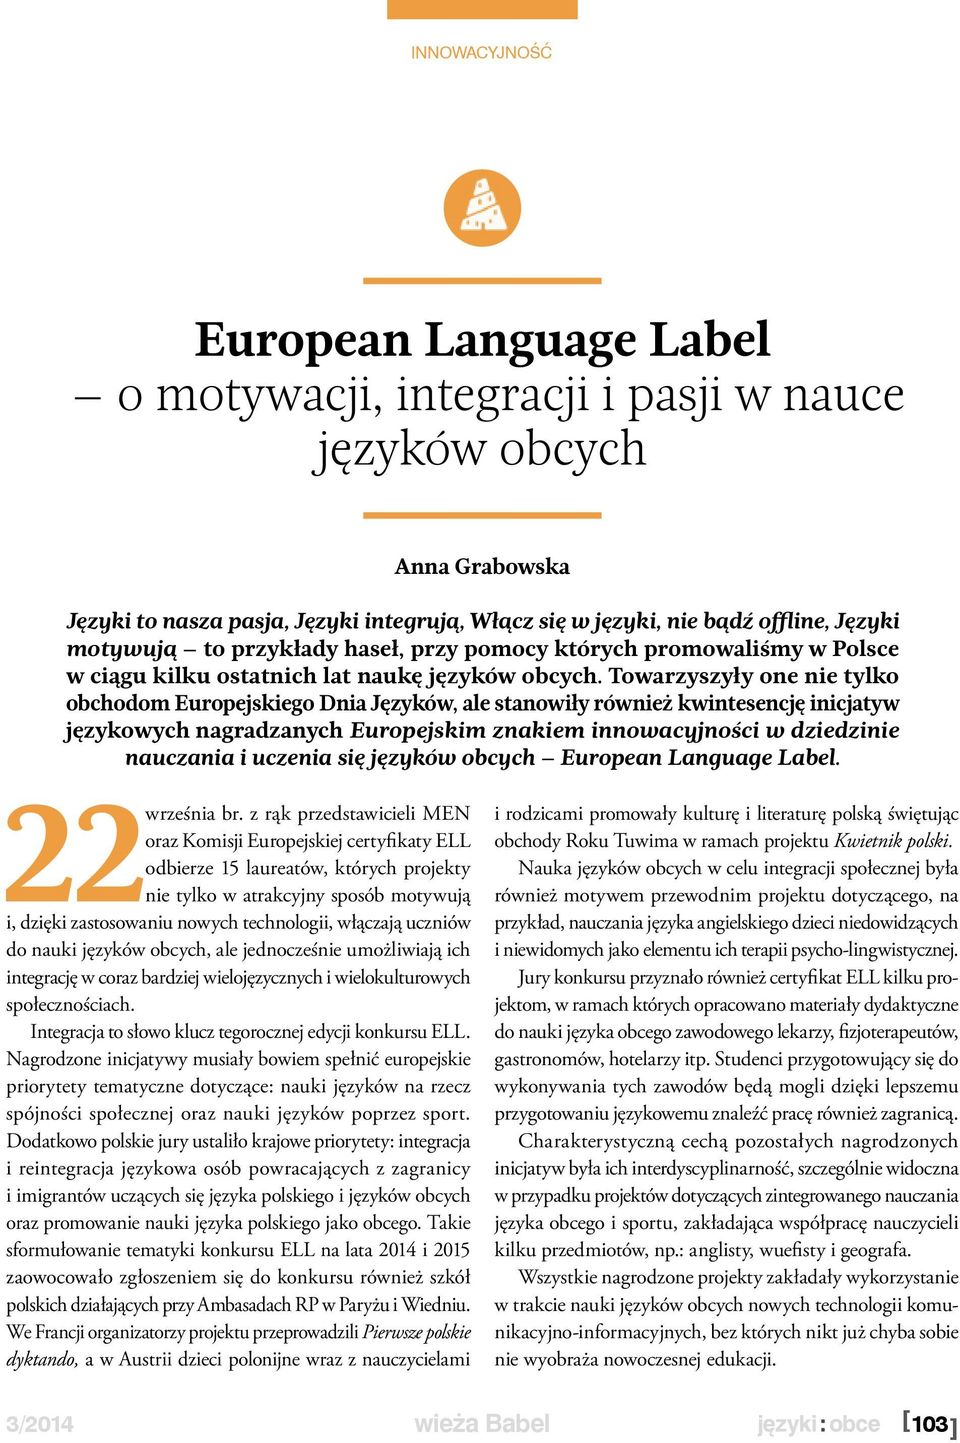 Towarzyszyły one nie tylko obchodom Europejskiego Dnia Języków, ale stanowiły również kwintesencję inicjatyw językowych nagradzanych Europejskim znakiem innowacyjności w dziedzinie nauczania i